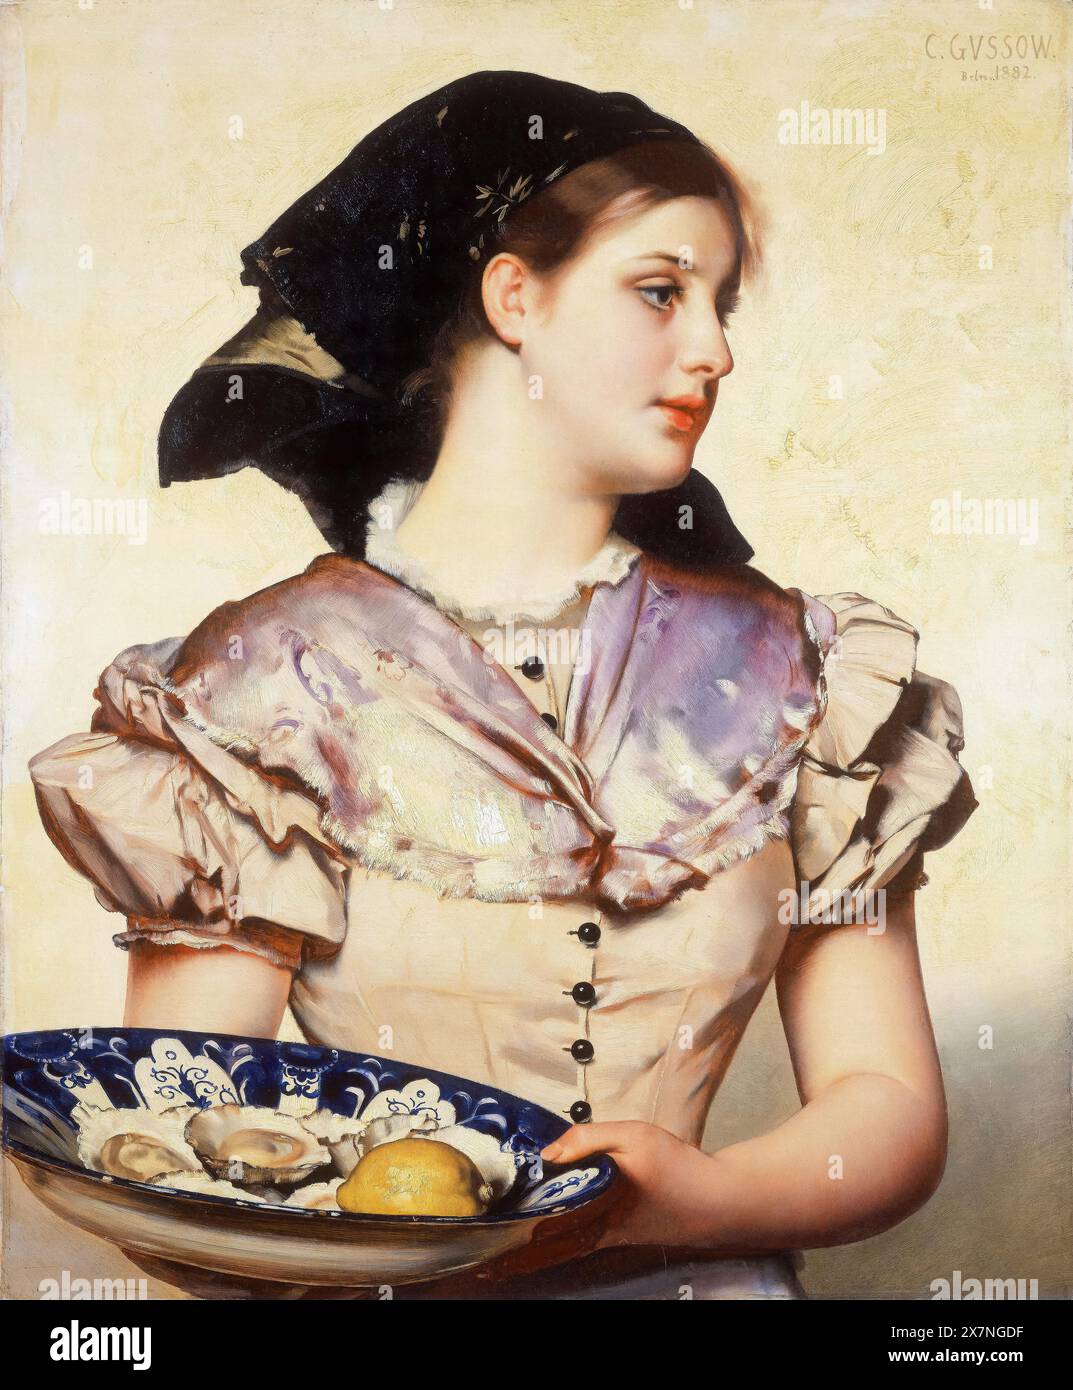 Karl Gussow, The Oyster Girl, portrait peint à l'huile sur panneau, 1882 Banque D'Images